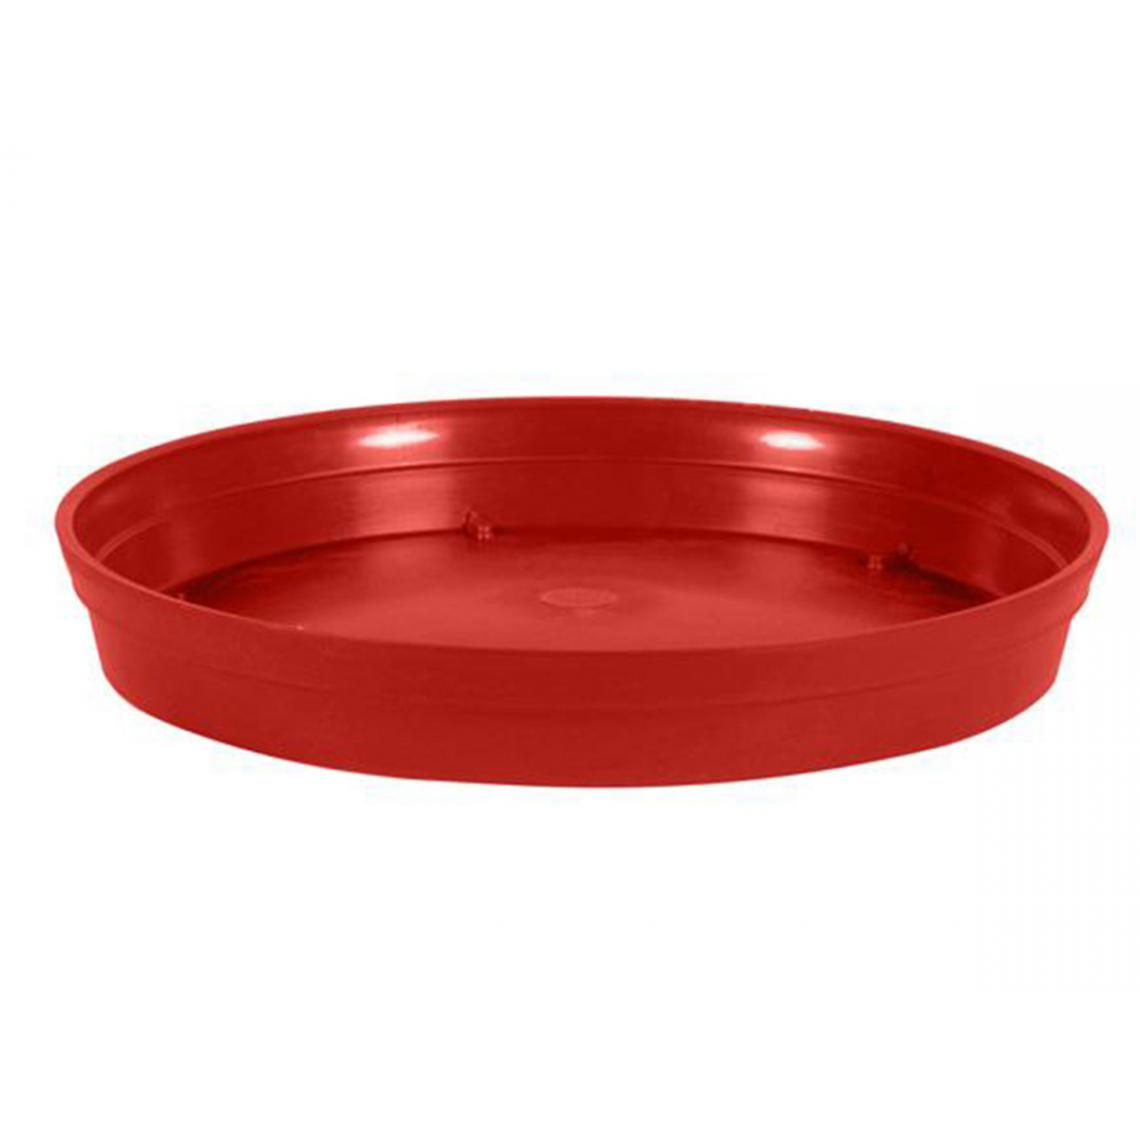 Eda Plastiques - Soucoupe Toscane Pop rouge Ø 345 mm - Pots, cache-pots